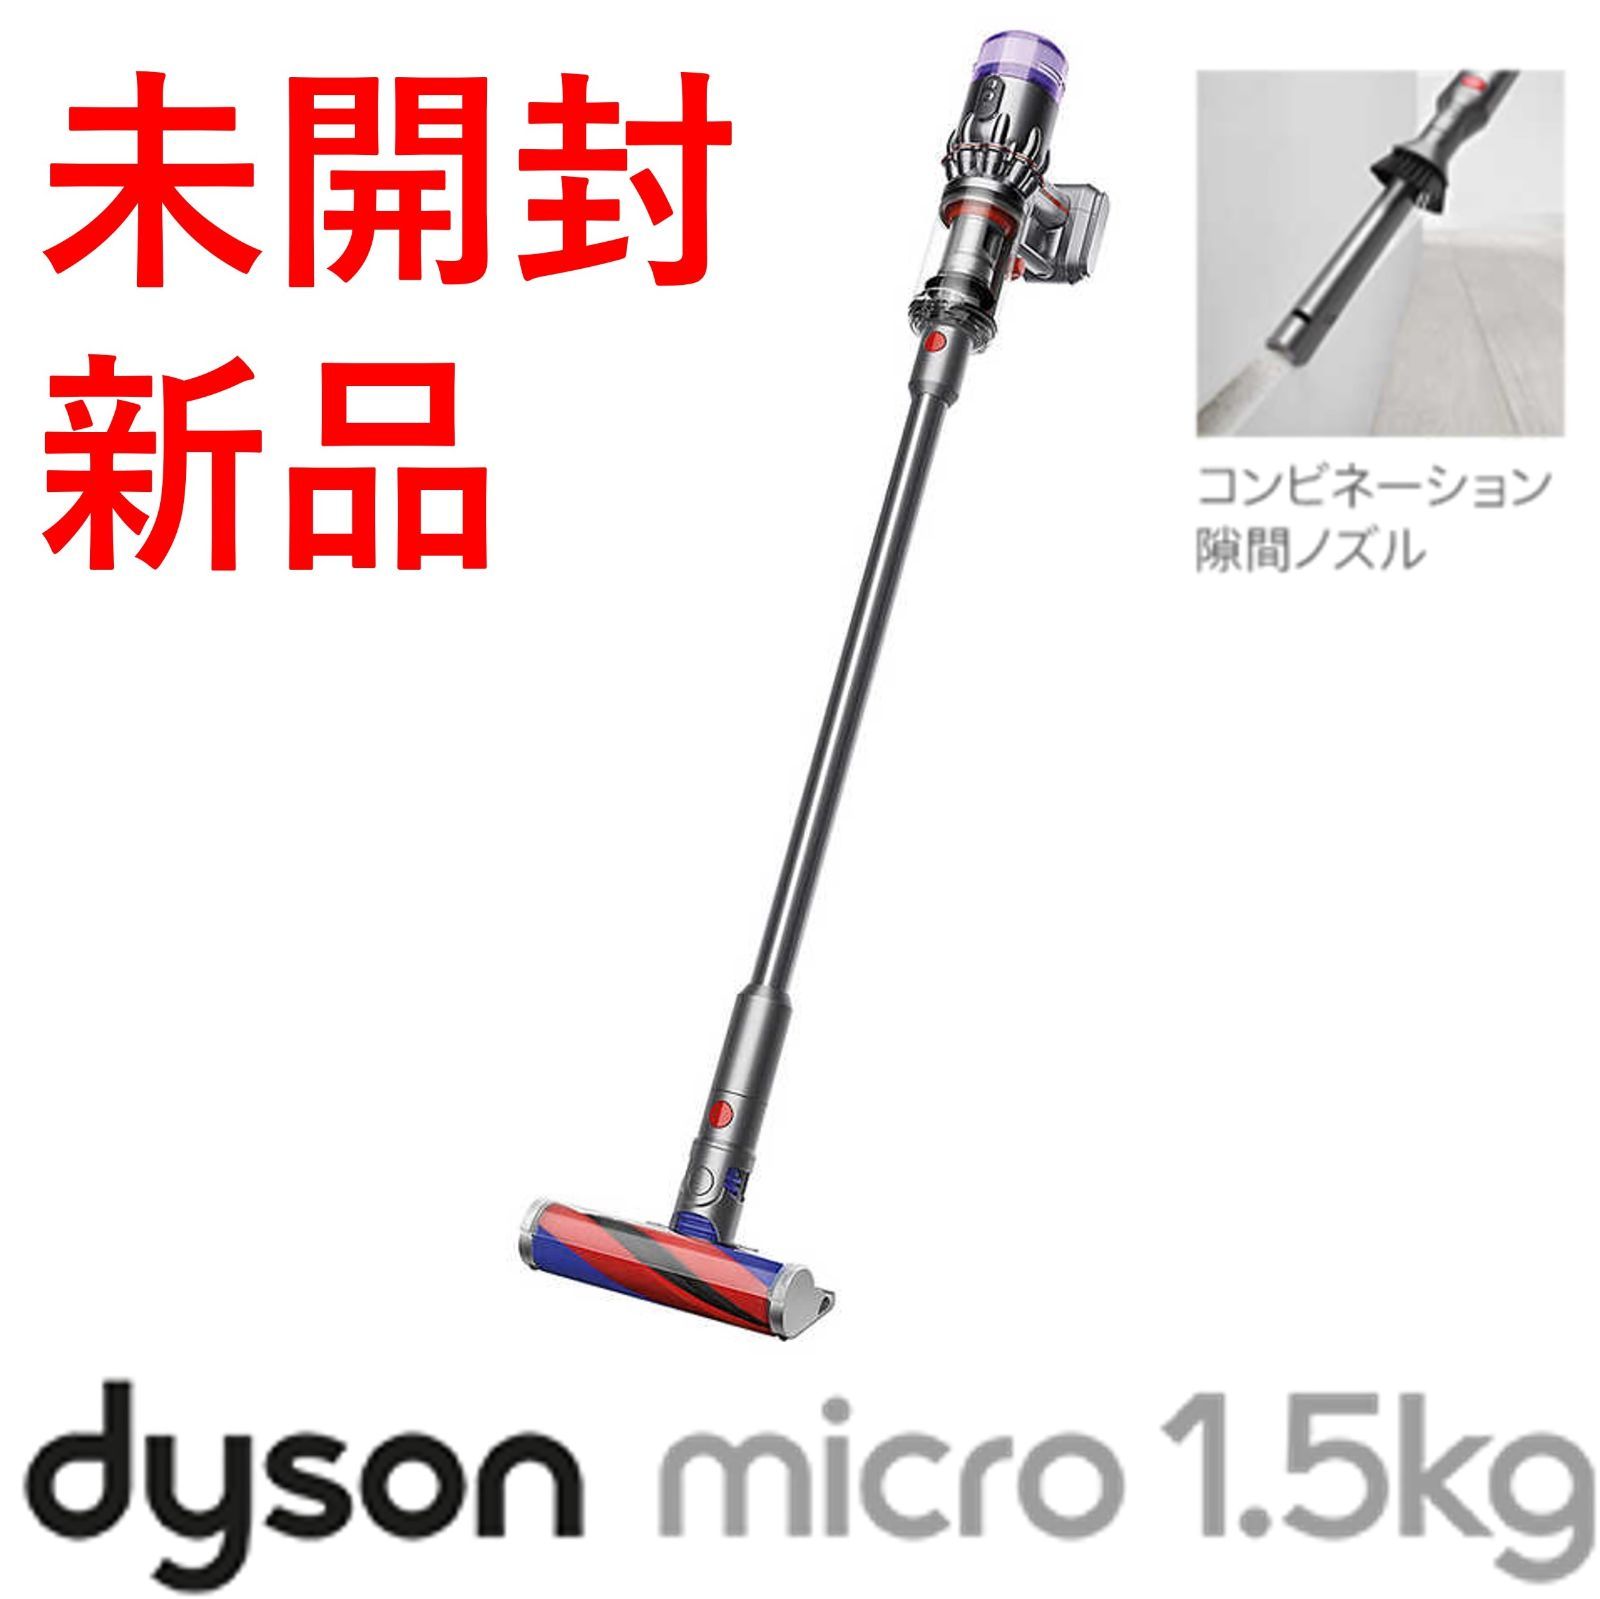 现货 ダイソン Micro 1.5kg Origin SV21 FF ENT - www